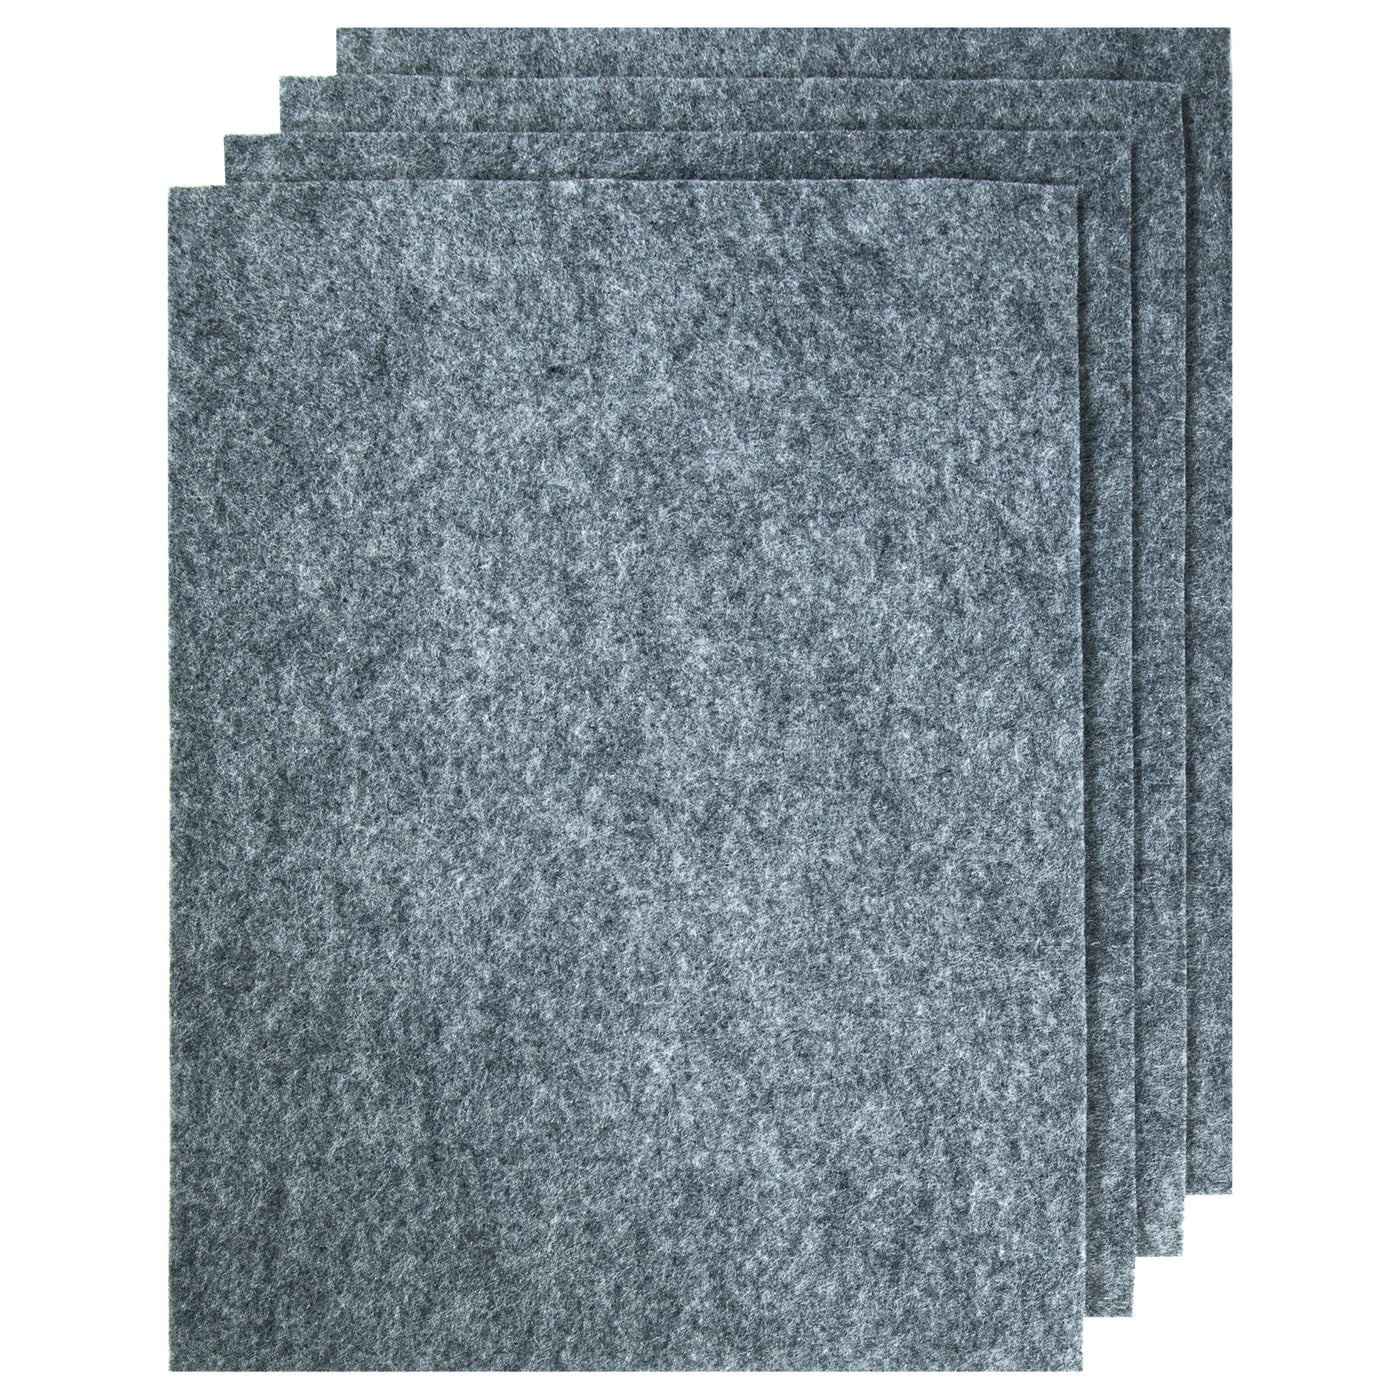 Wool Felt Sheet - 100% Wool Felt in color HEATHER WHITE - 18 X 18 Wool  Felt Sheet